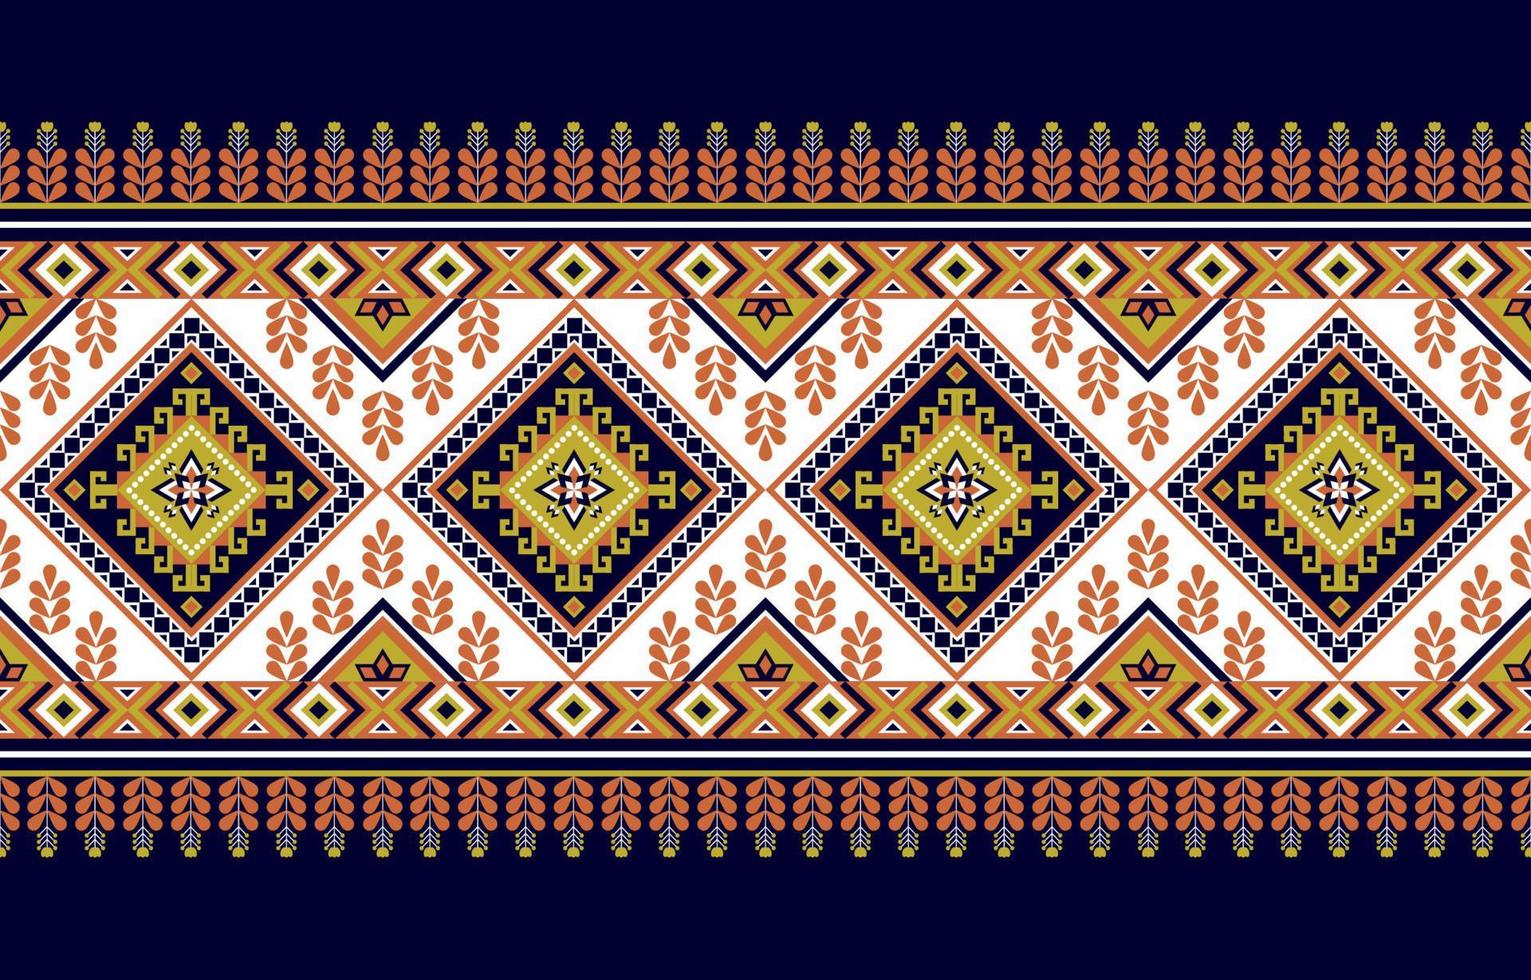 gemetriska etniska orientaliska mönster traditionella. blomdekoration. design för bakgrund, matta, tapeter, kläder, inslagning, batik, tyg, vektorillustration.broderistil. vektor